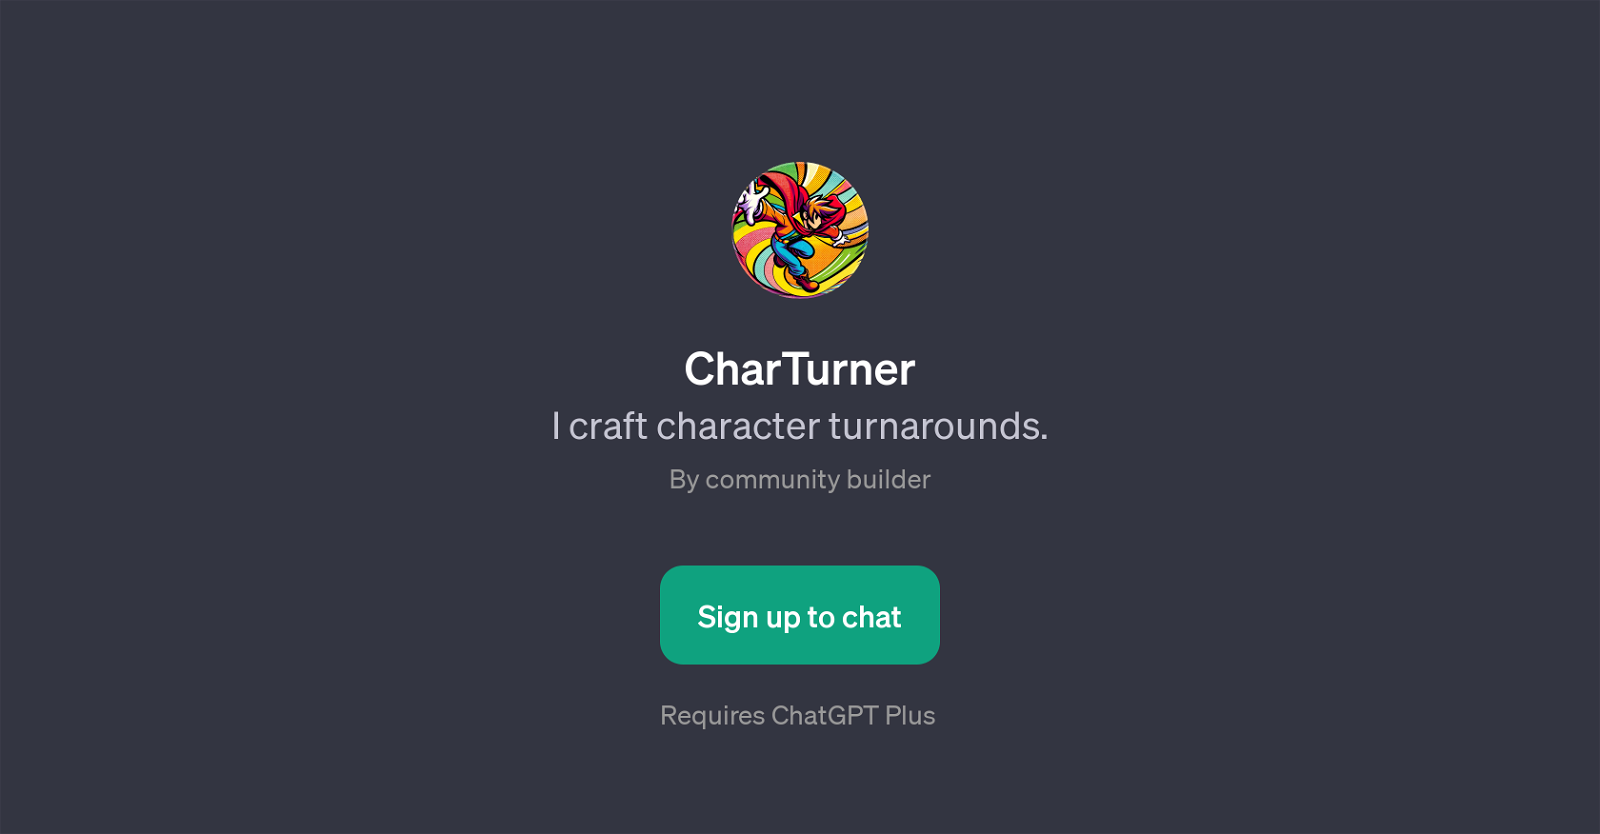 CharTurner website